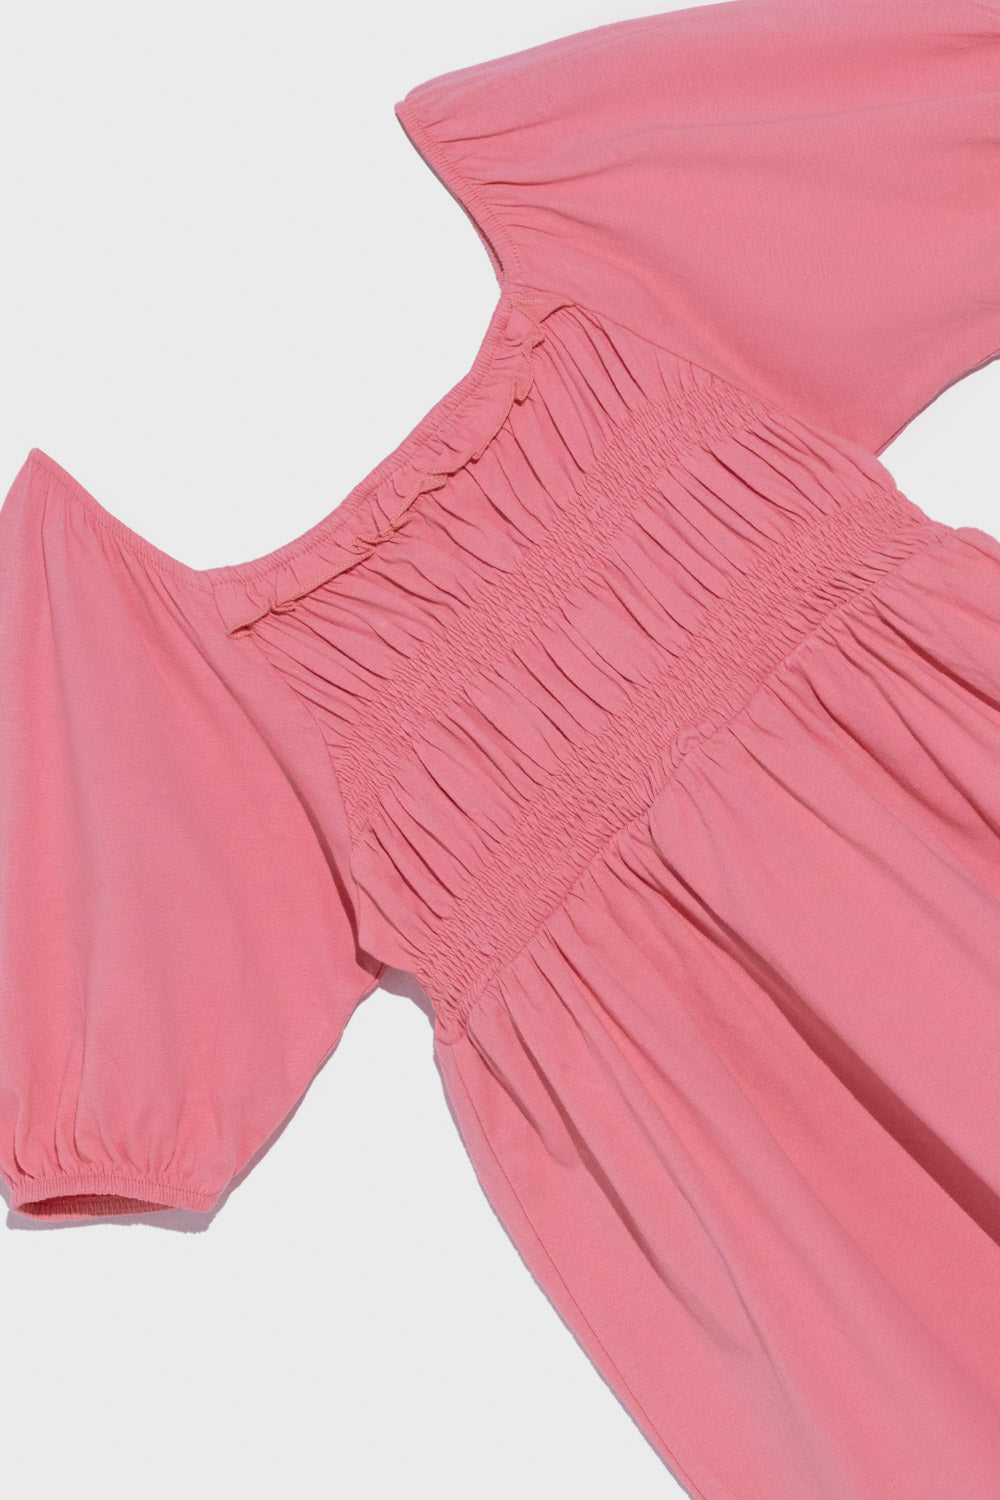 Girls Summer II Pink Dress Jersey